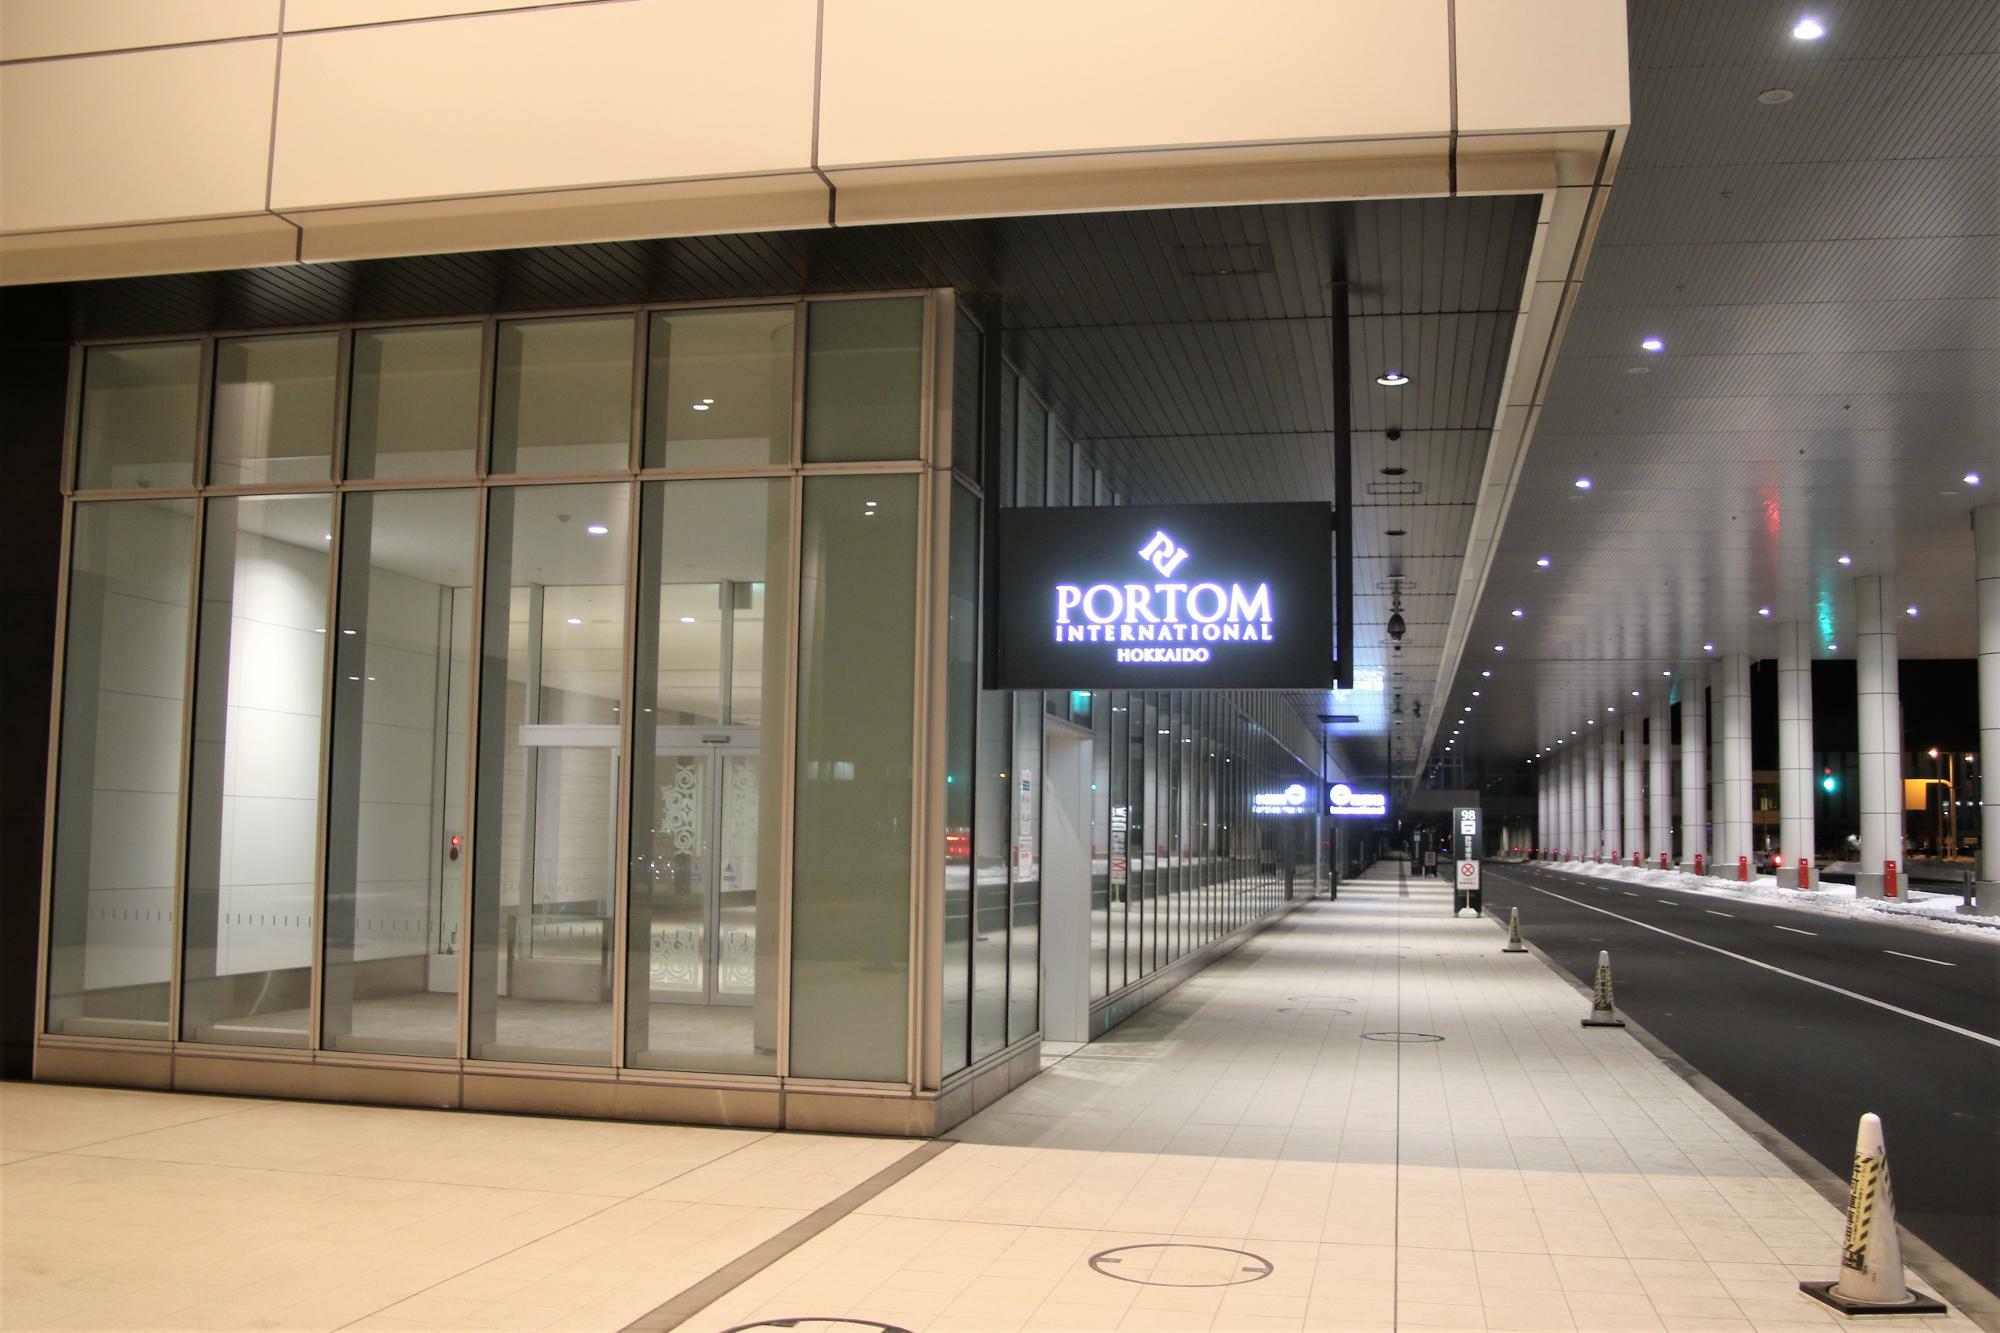 ポルトムインターナショナル北海道正面玄関と国際線ターミナル